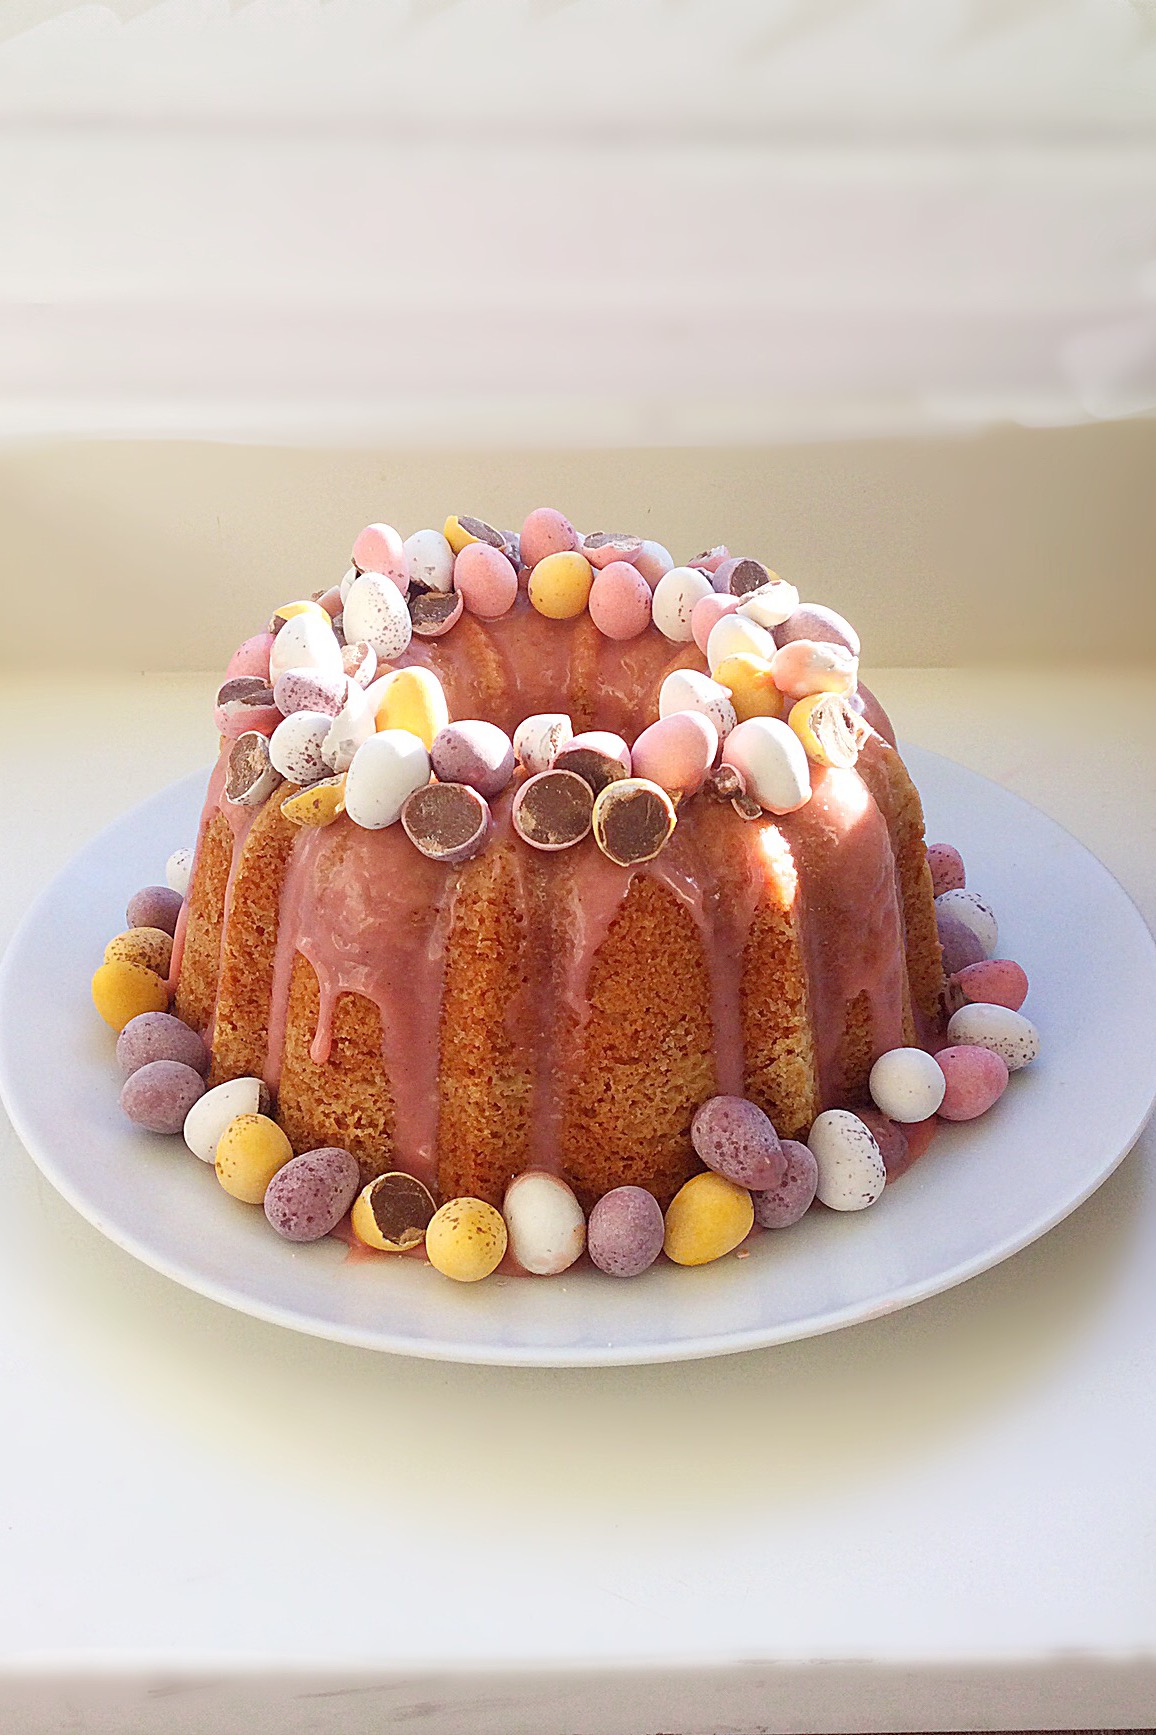 The Best Carrot Cake: Easter Bundt Cake Recipe - Steam & Bake